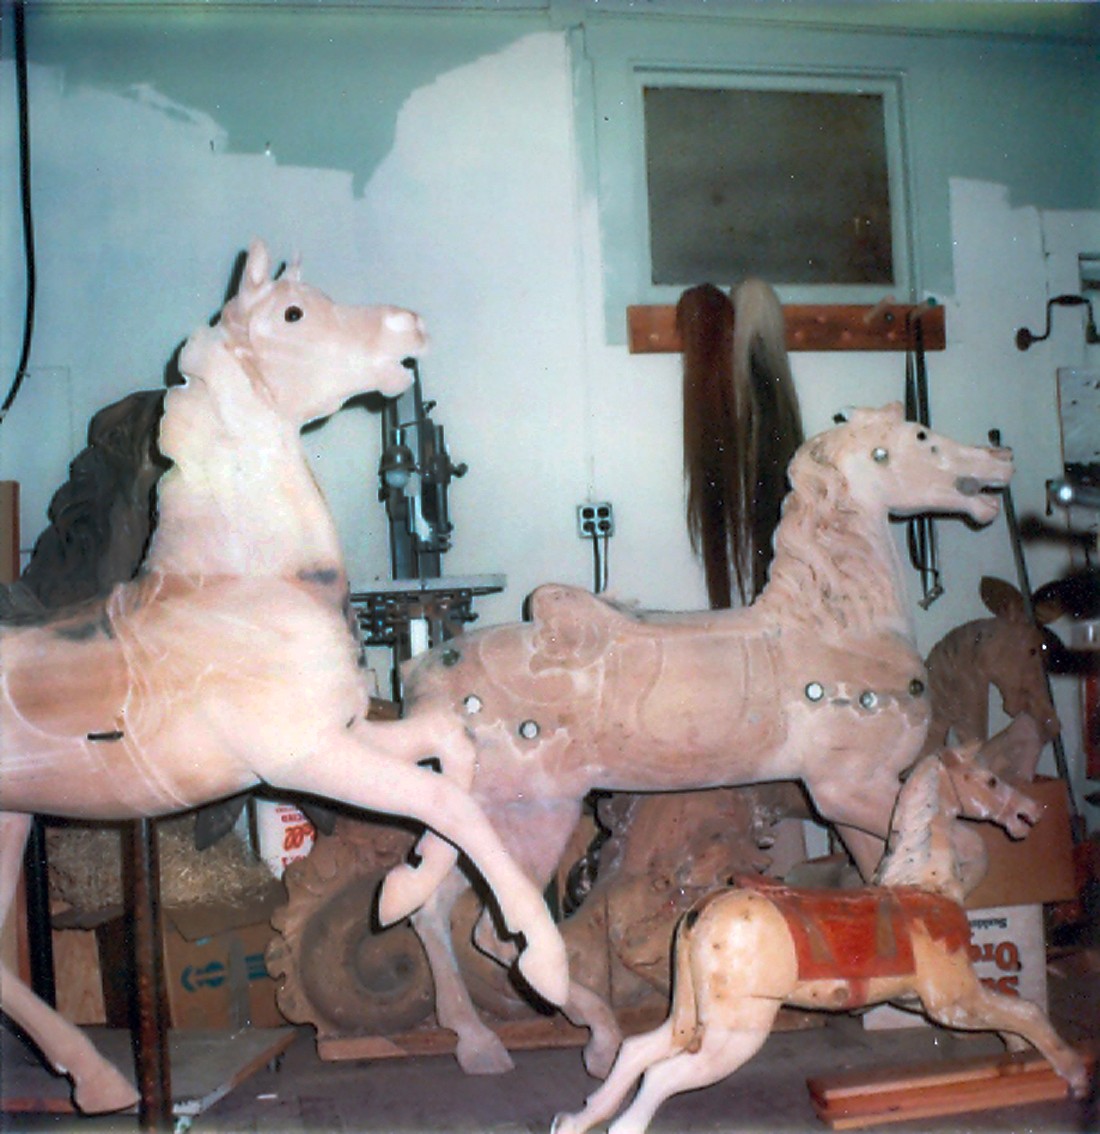 Fraley-Redbug-Studio-carousel-horse-restoration-1980-visit